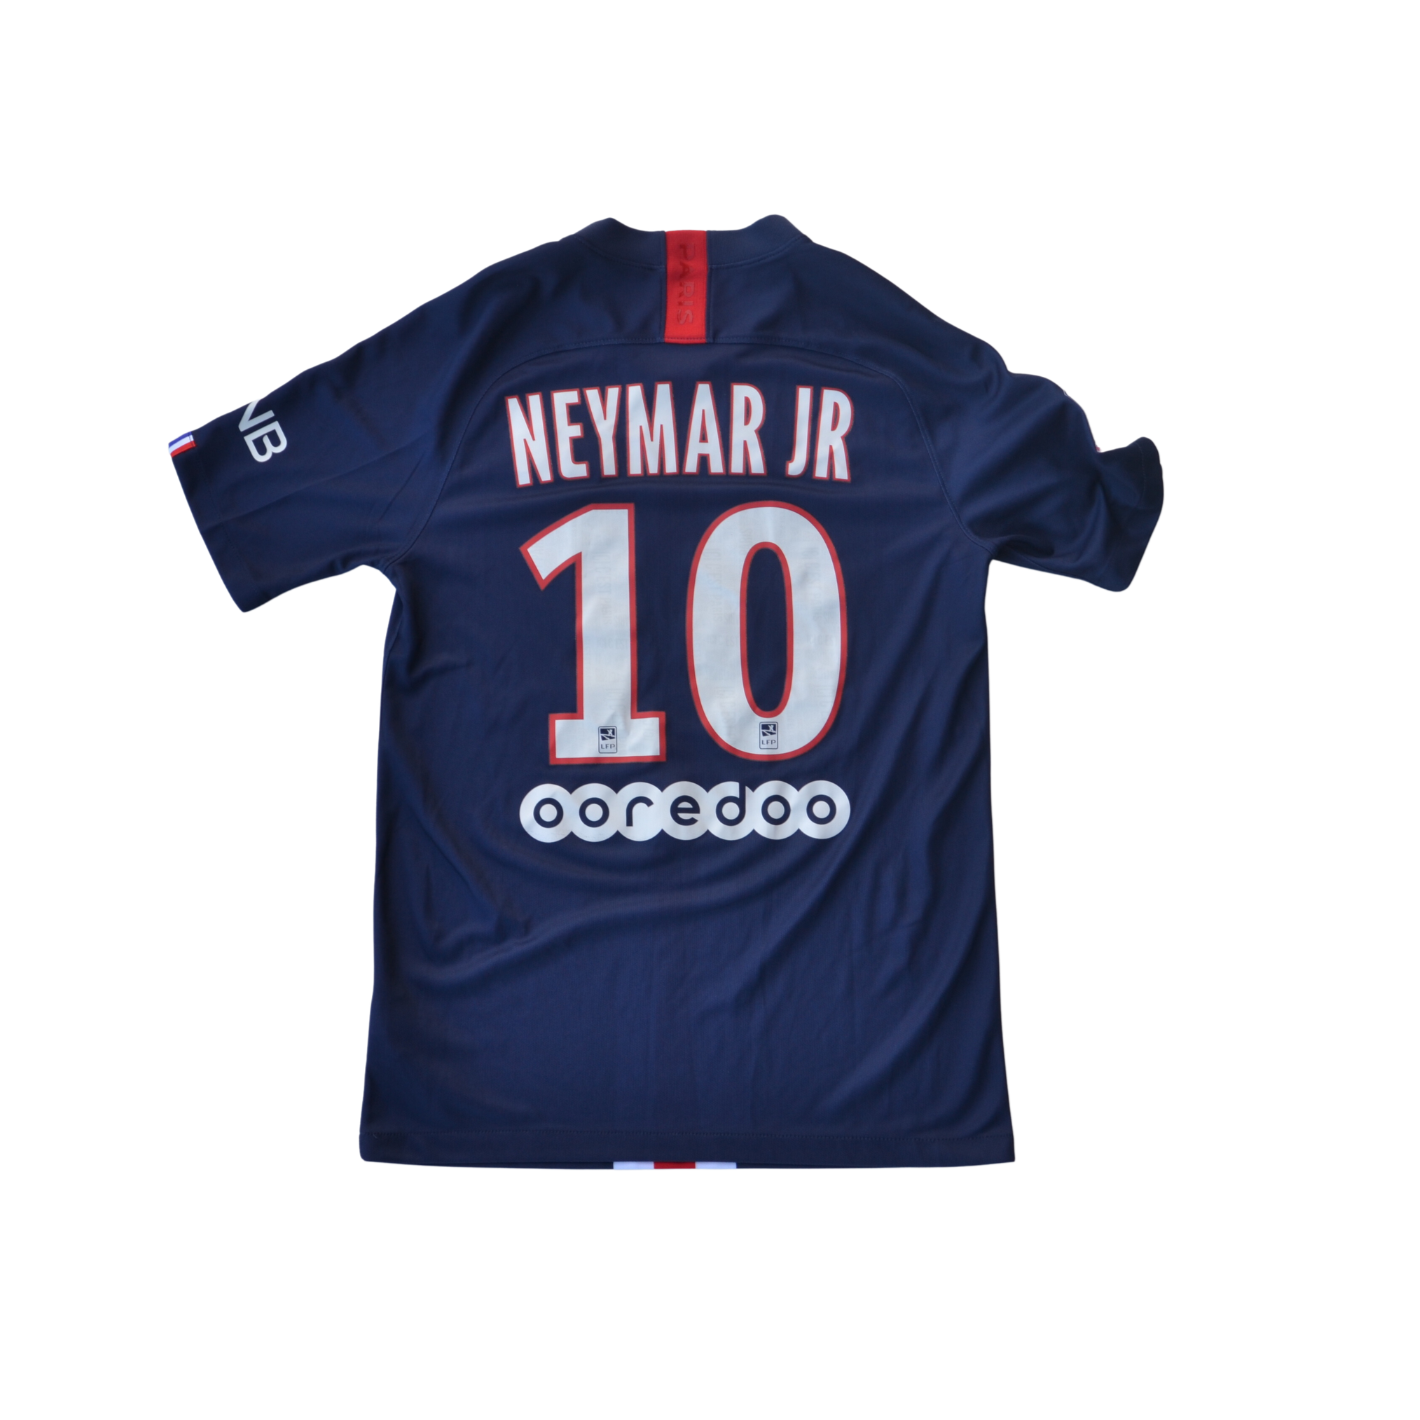 Neymar Jnr PSG 19/20 home kit (S)